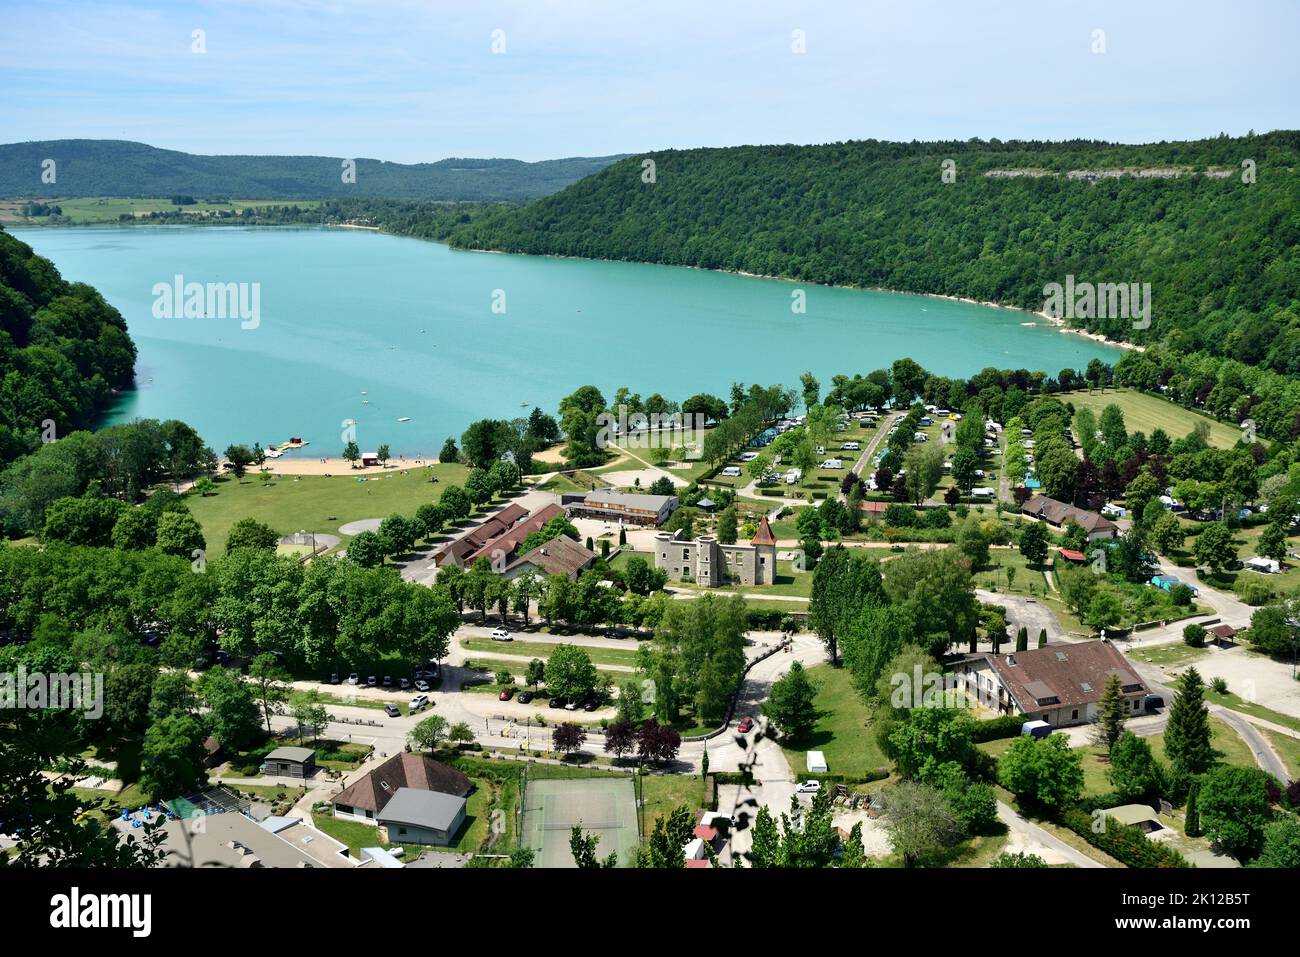 Lac de Chalain, lake, castel, Chateau de Chalain, camping, beach, Fontenue commune, Jura department, Bourgogne-Franche-Comté region, Jura, France Stock Photo